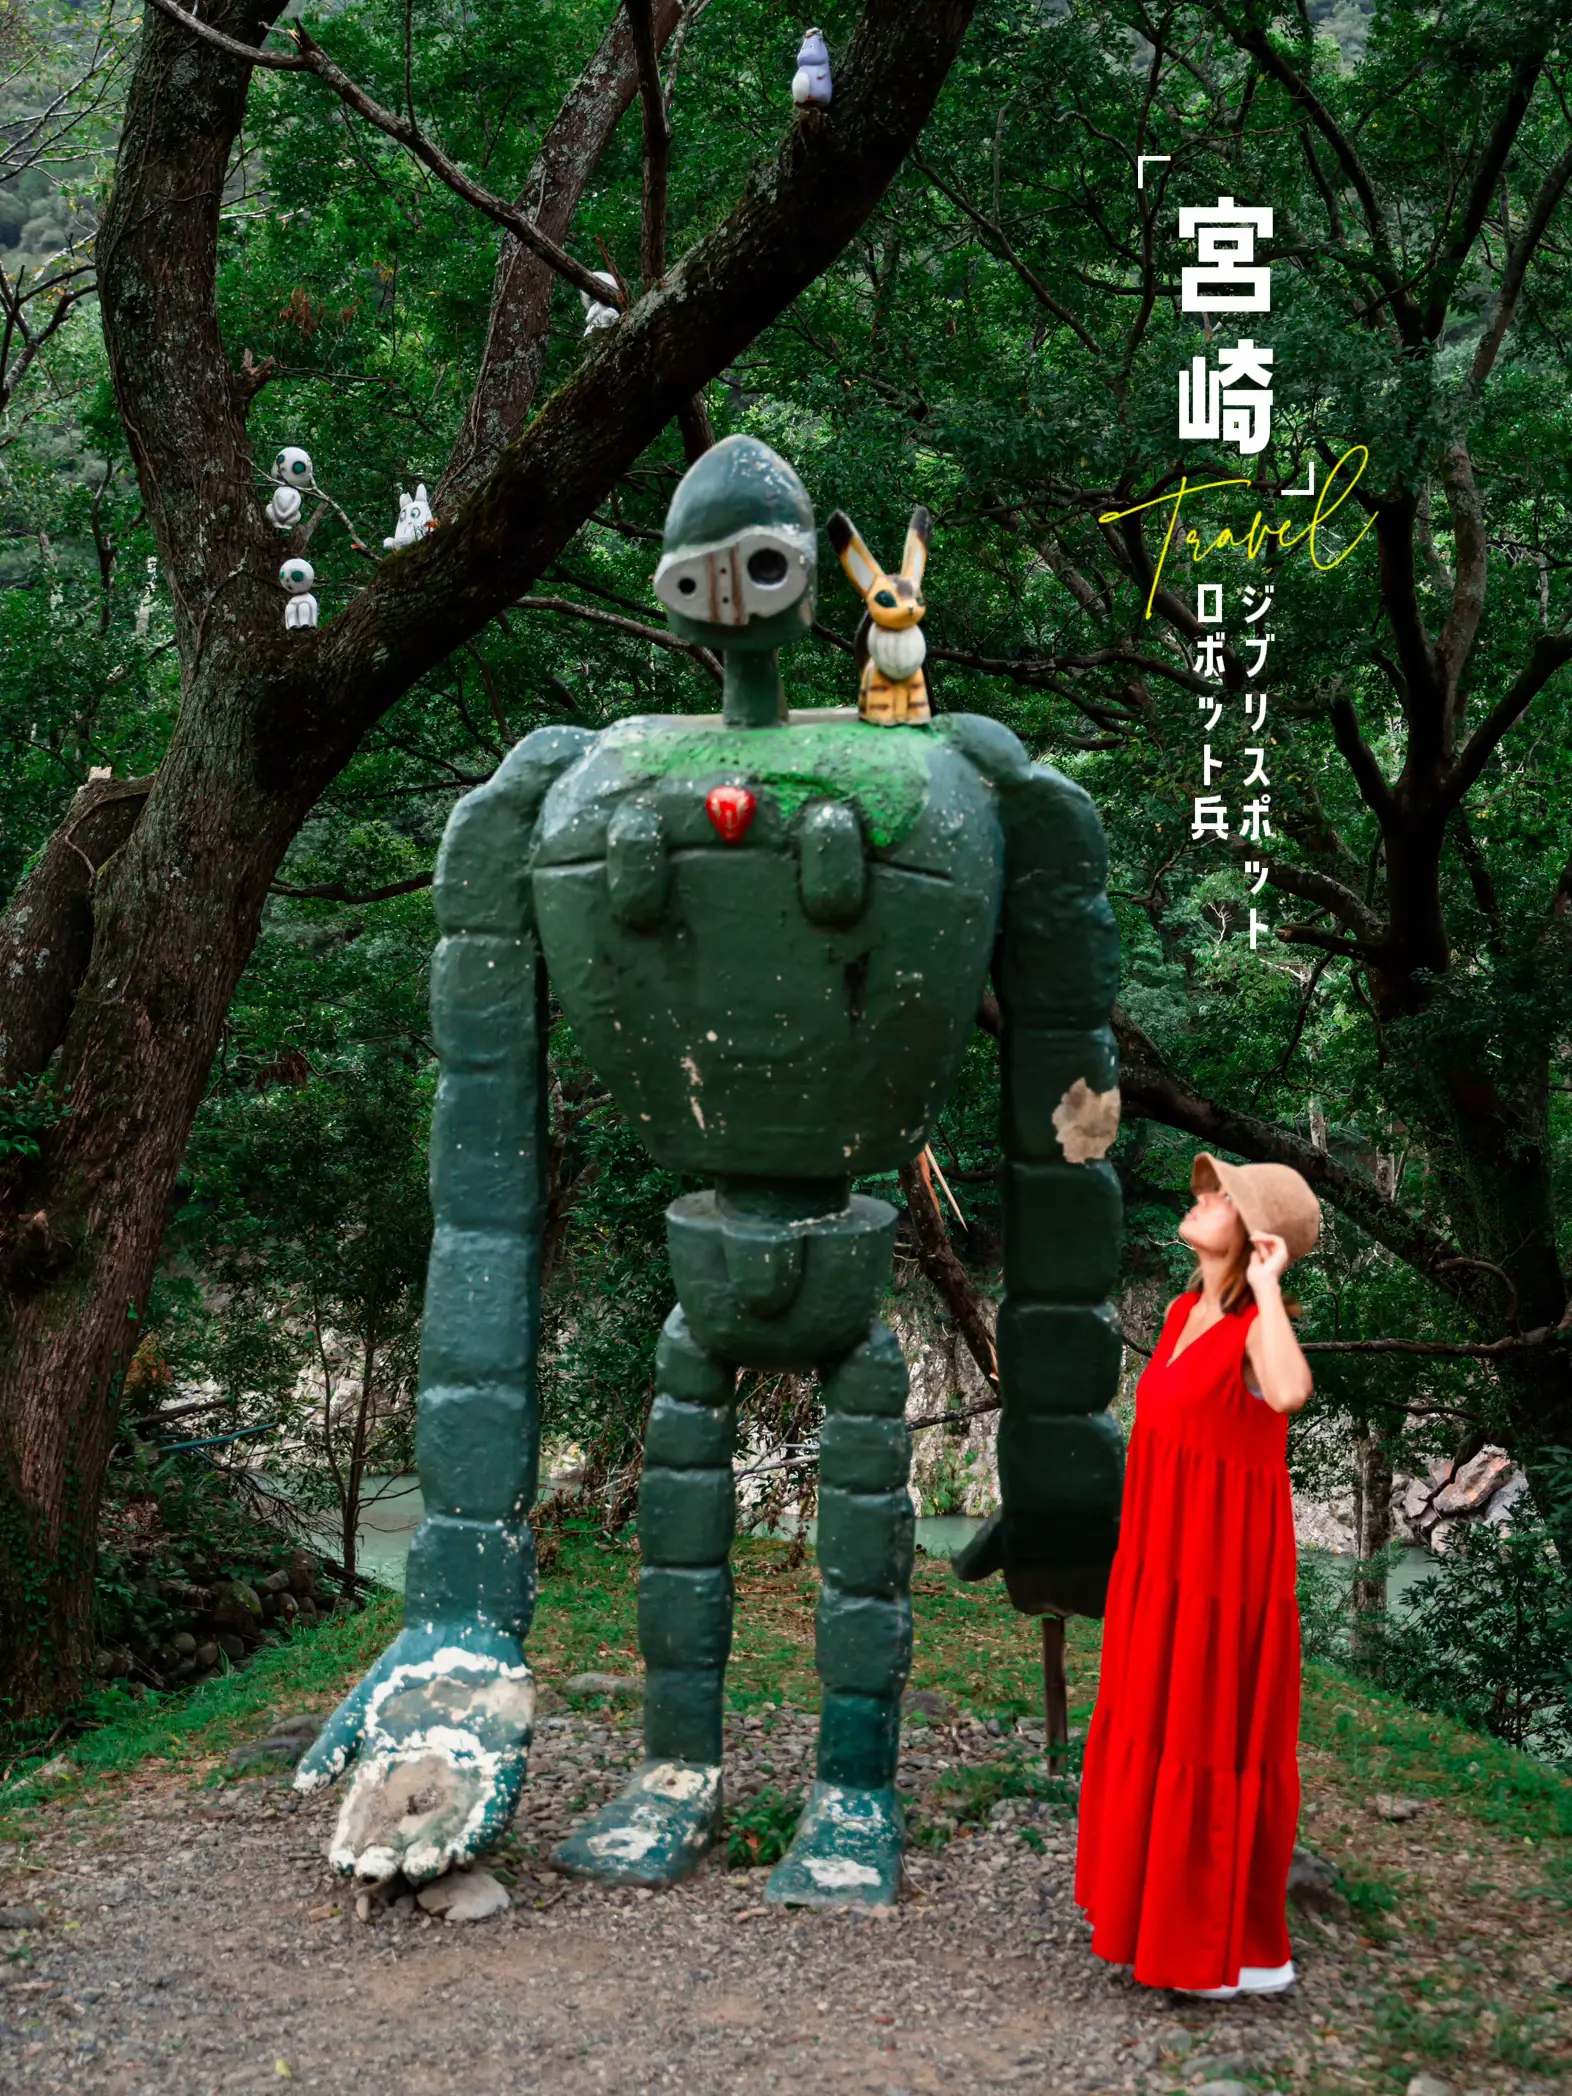 ジブリ映画「天空の城ラピュタ」のロボット兵のオブジェ - 置物